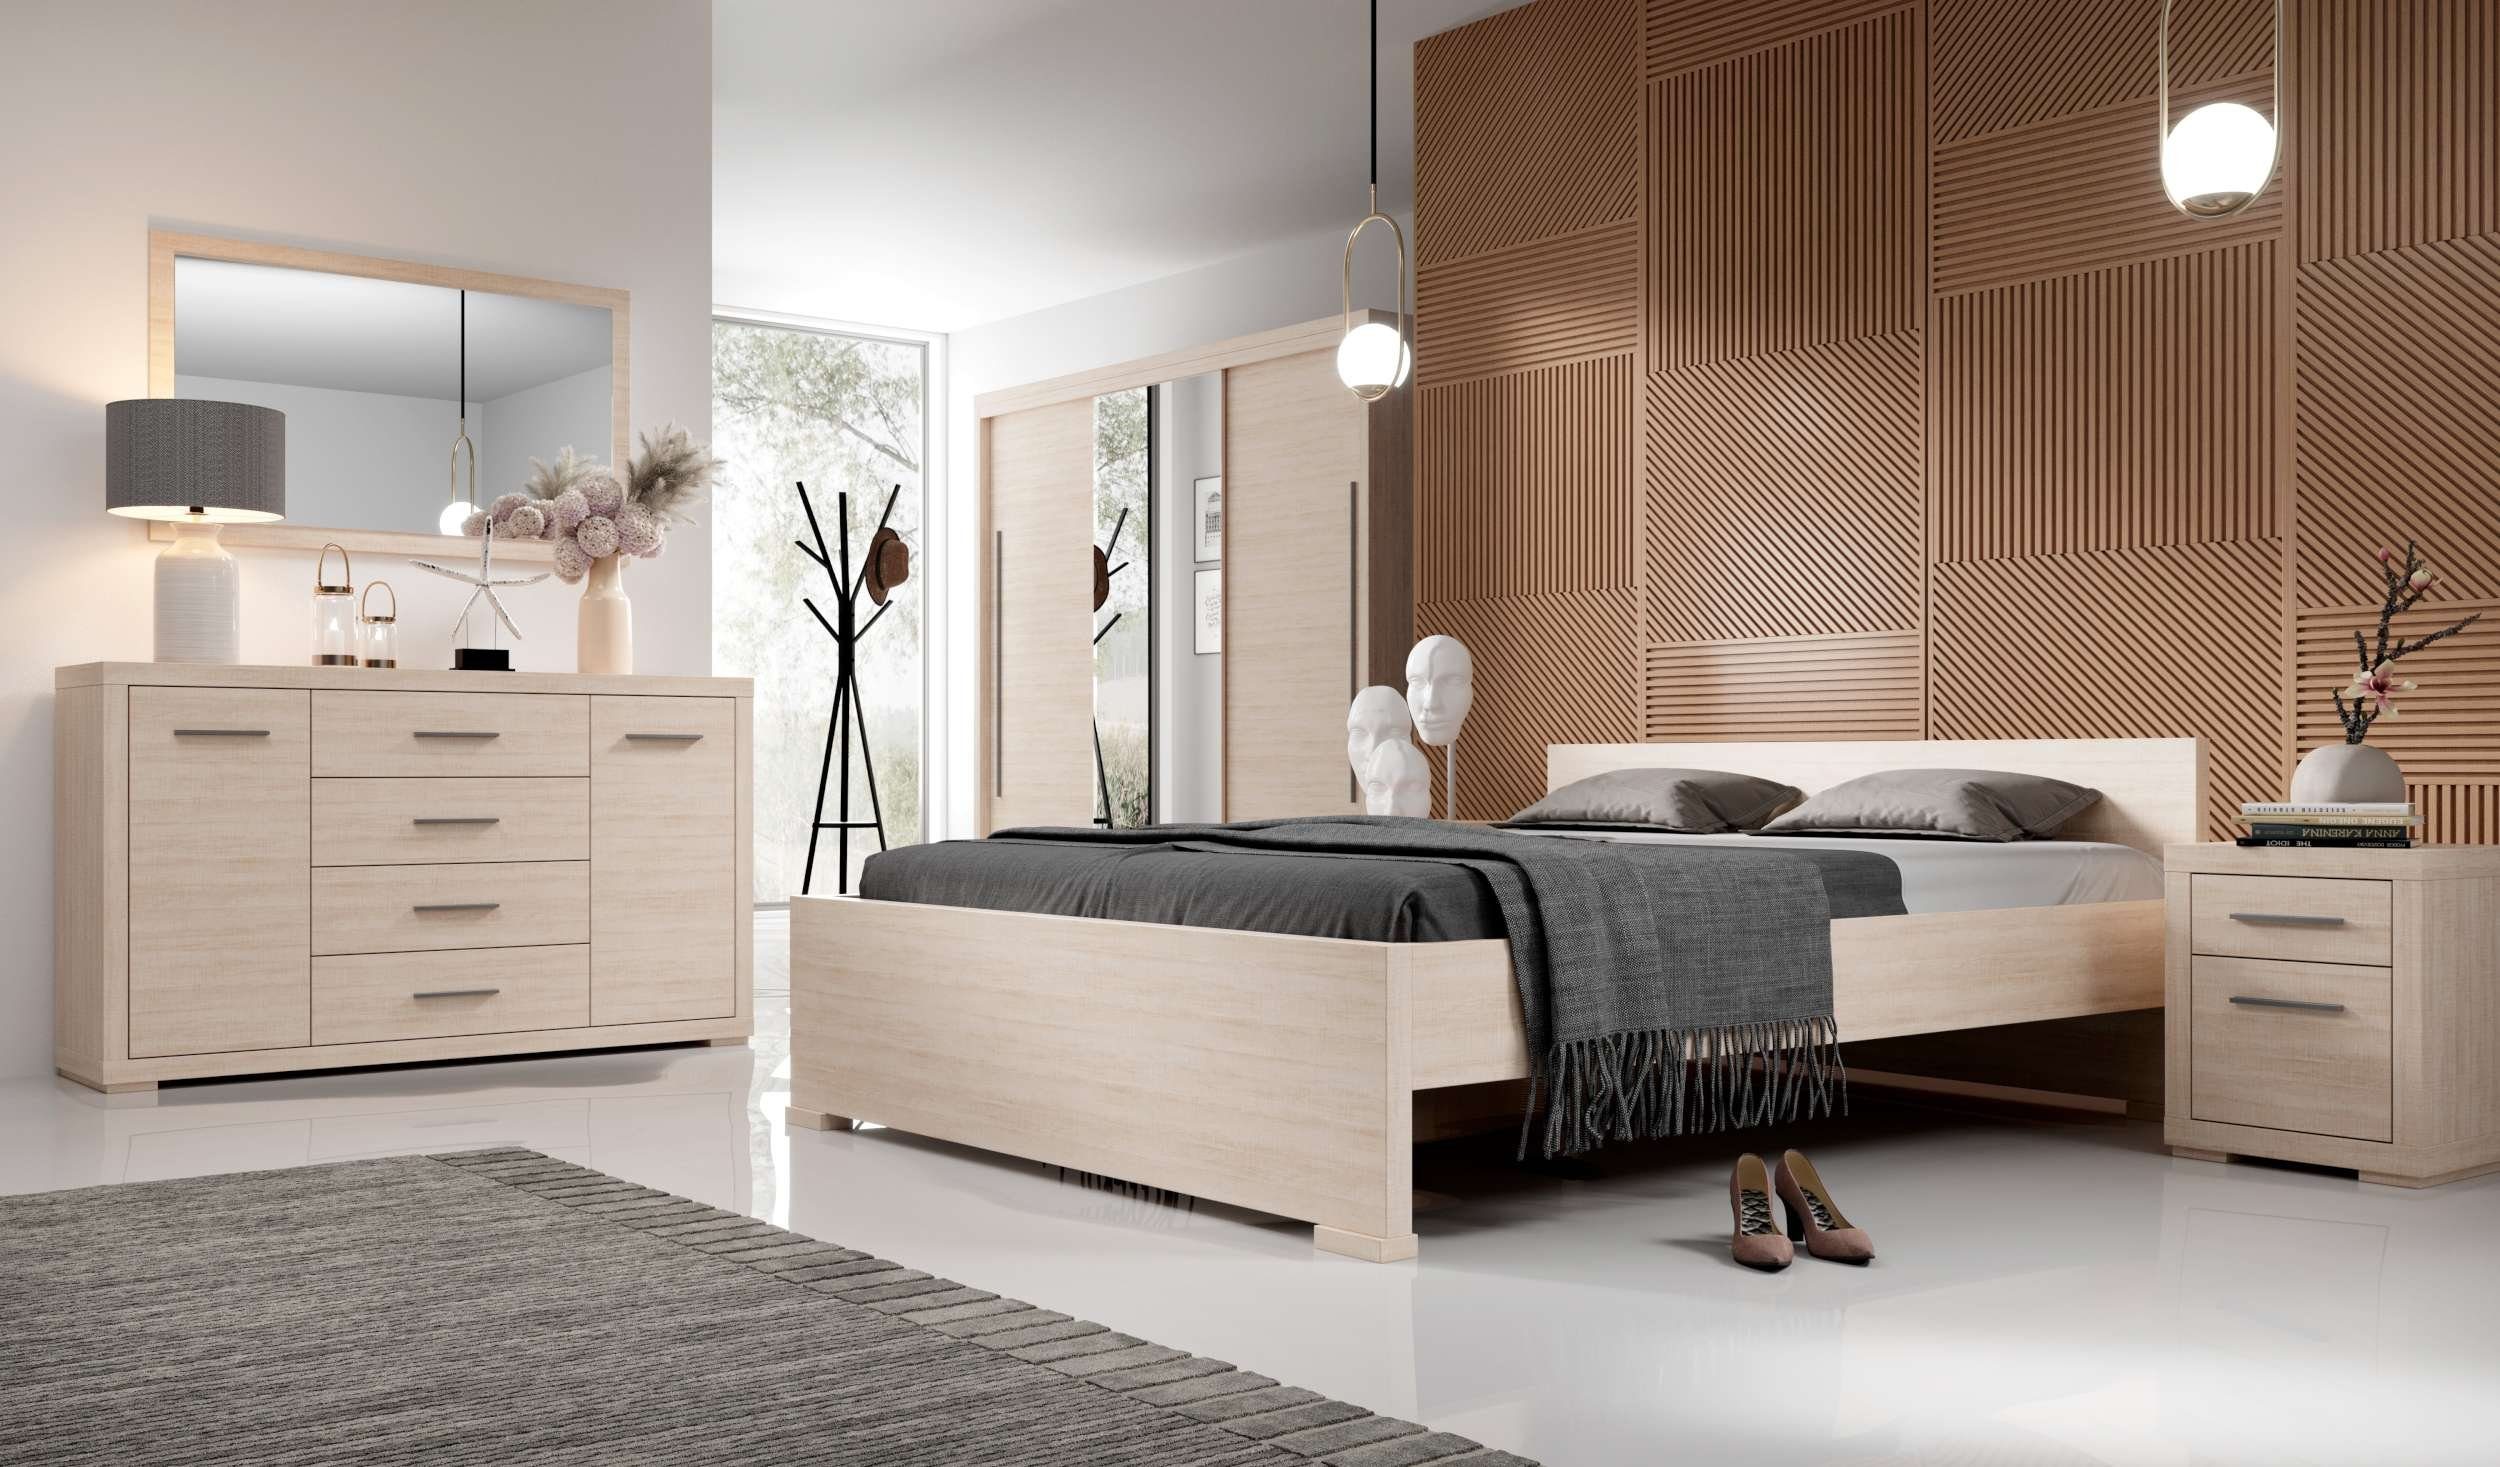 99rooms Bettgestell Verdum (Schlafzimmerbett, Bett), 160x200 cm, mit Lattenrost, ohne Matratze, Modern Design